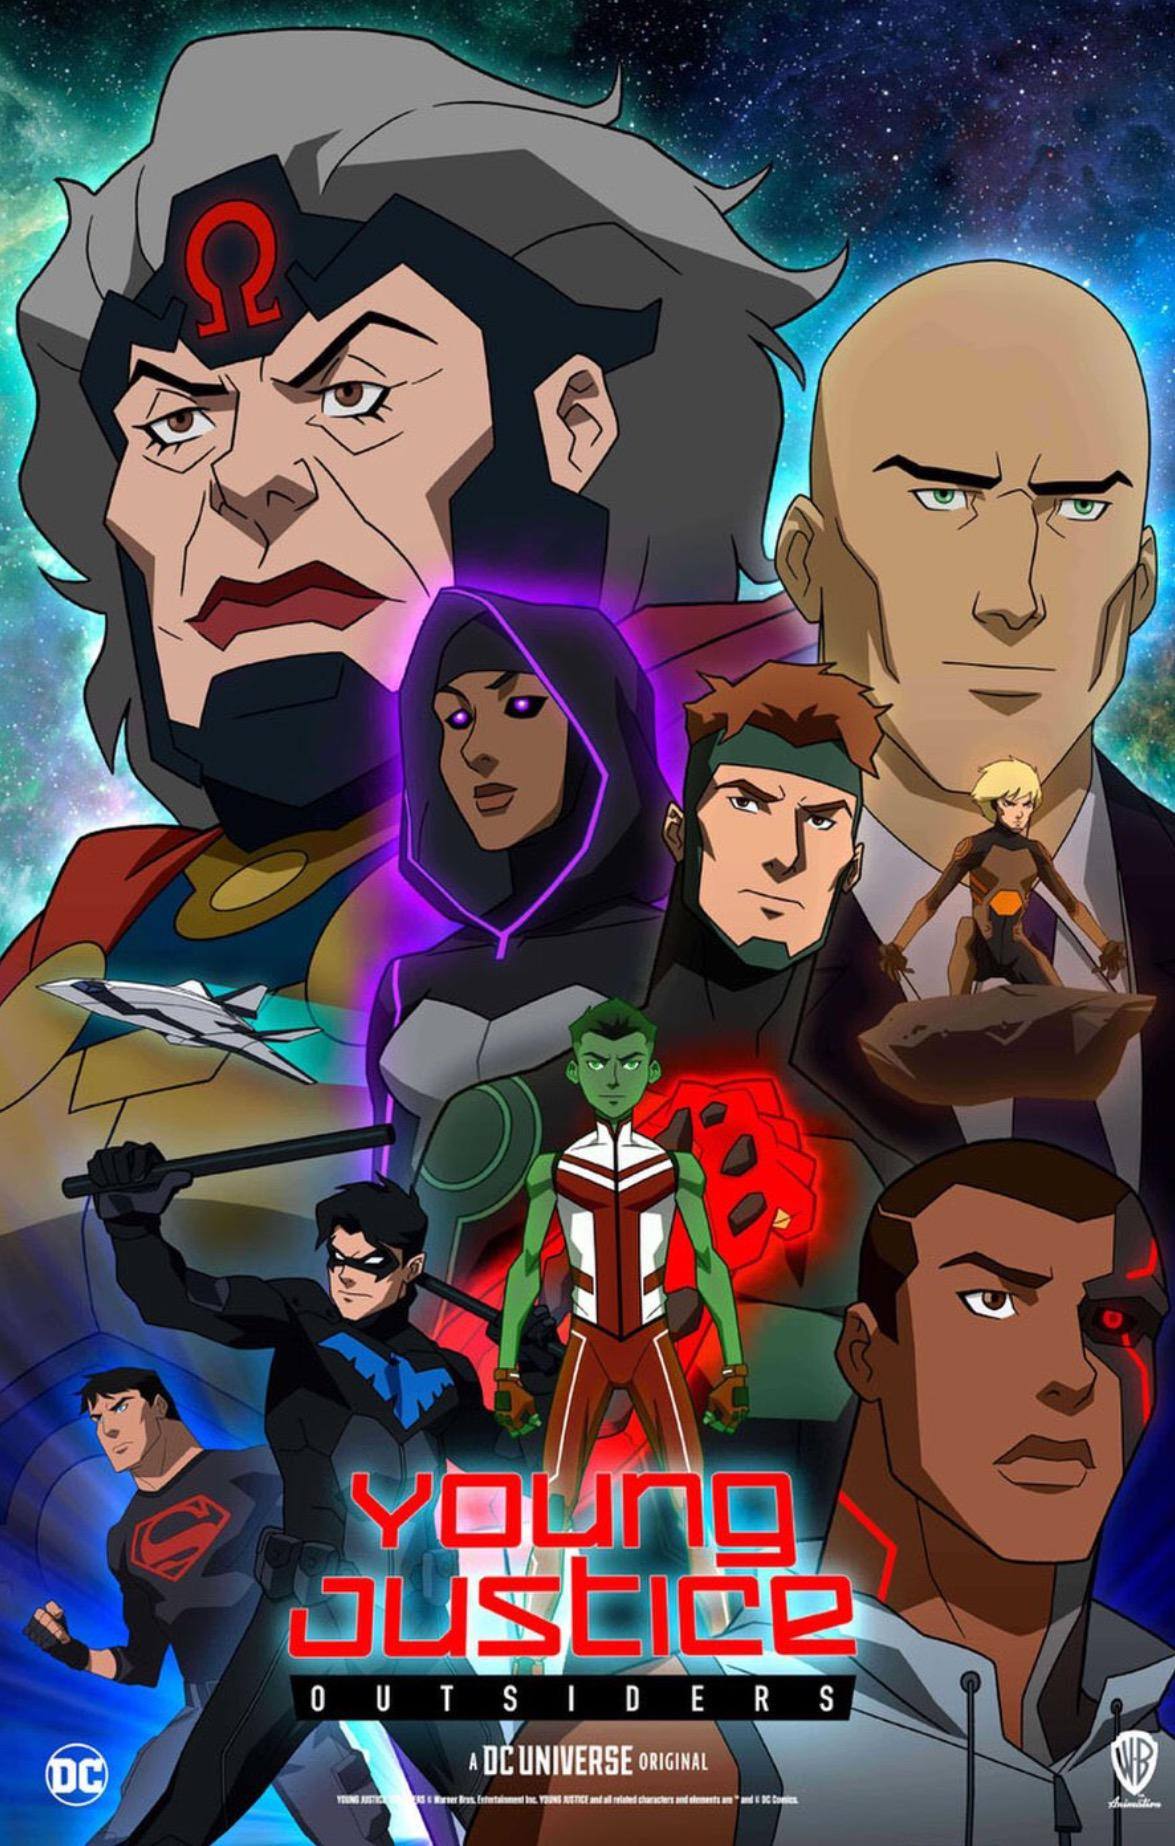 Titans (Temporada 1), Batpedia